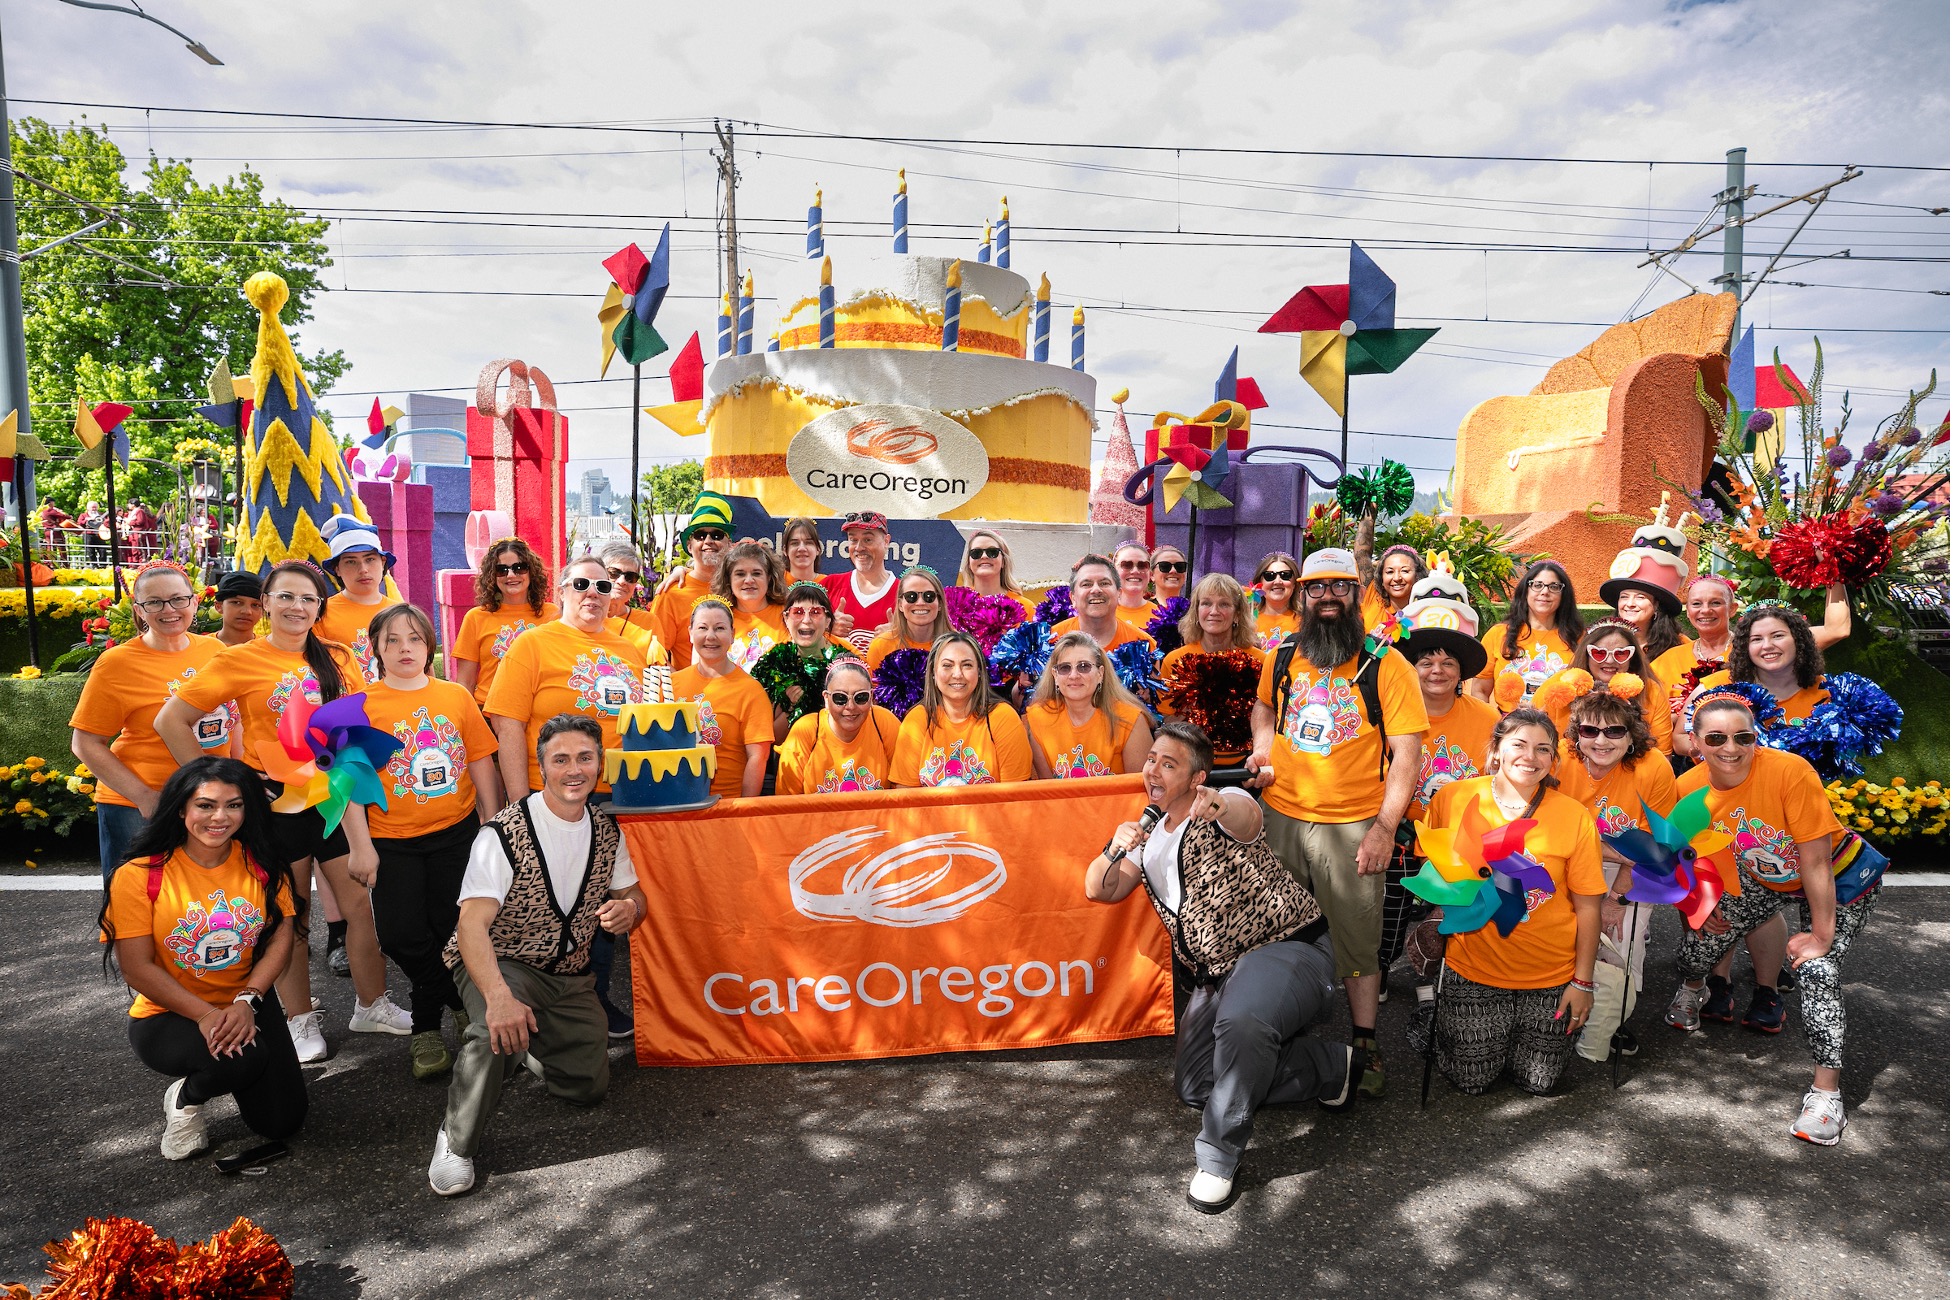 一群身穿橙色CareOregon T恤的人聚集在一台游行花车前，花车上装饰着一个巨大的生日蛋糕，上面写着CarerOregon